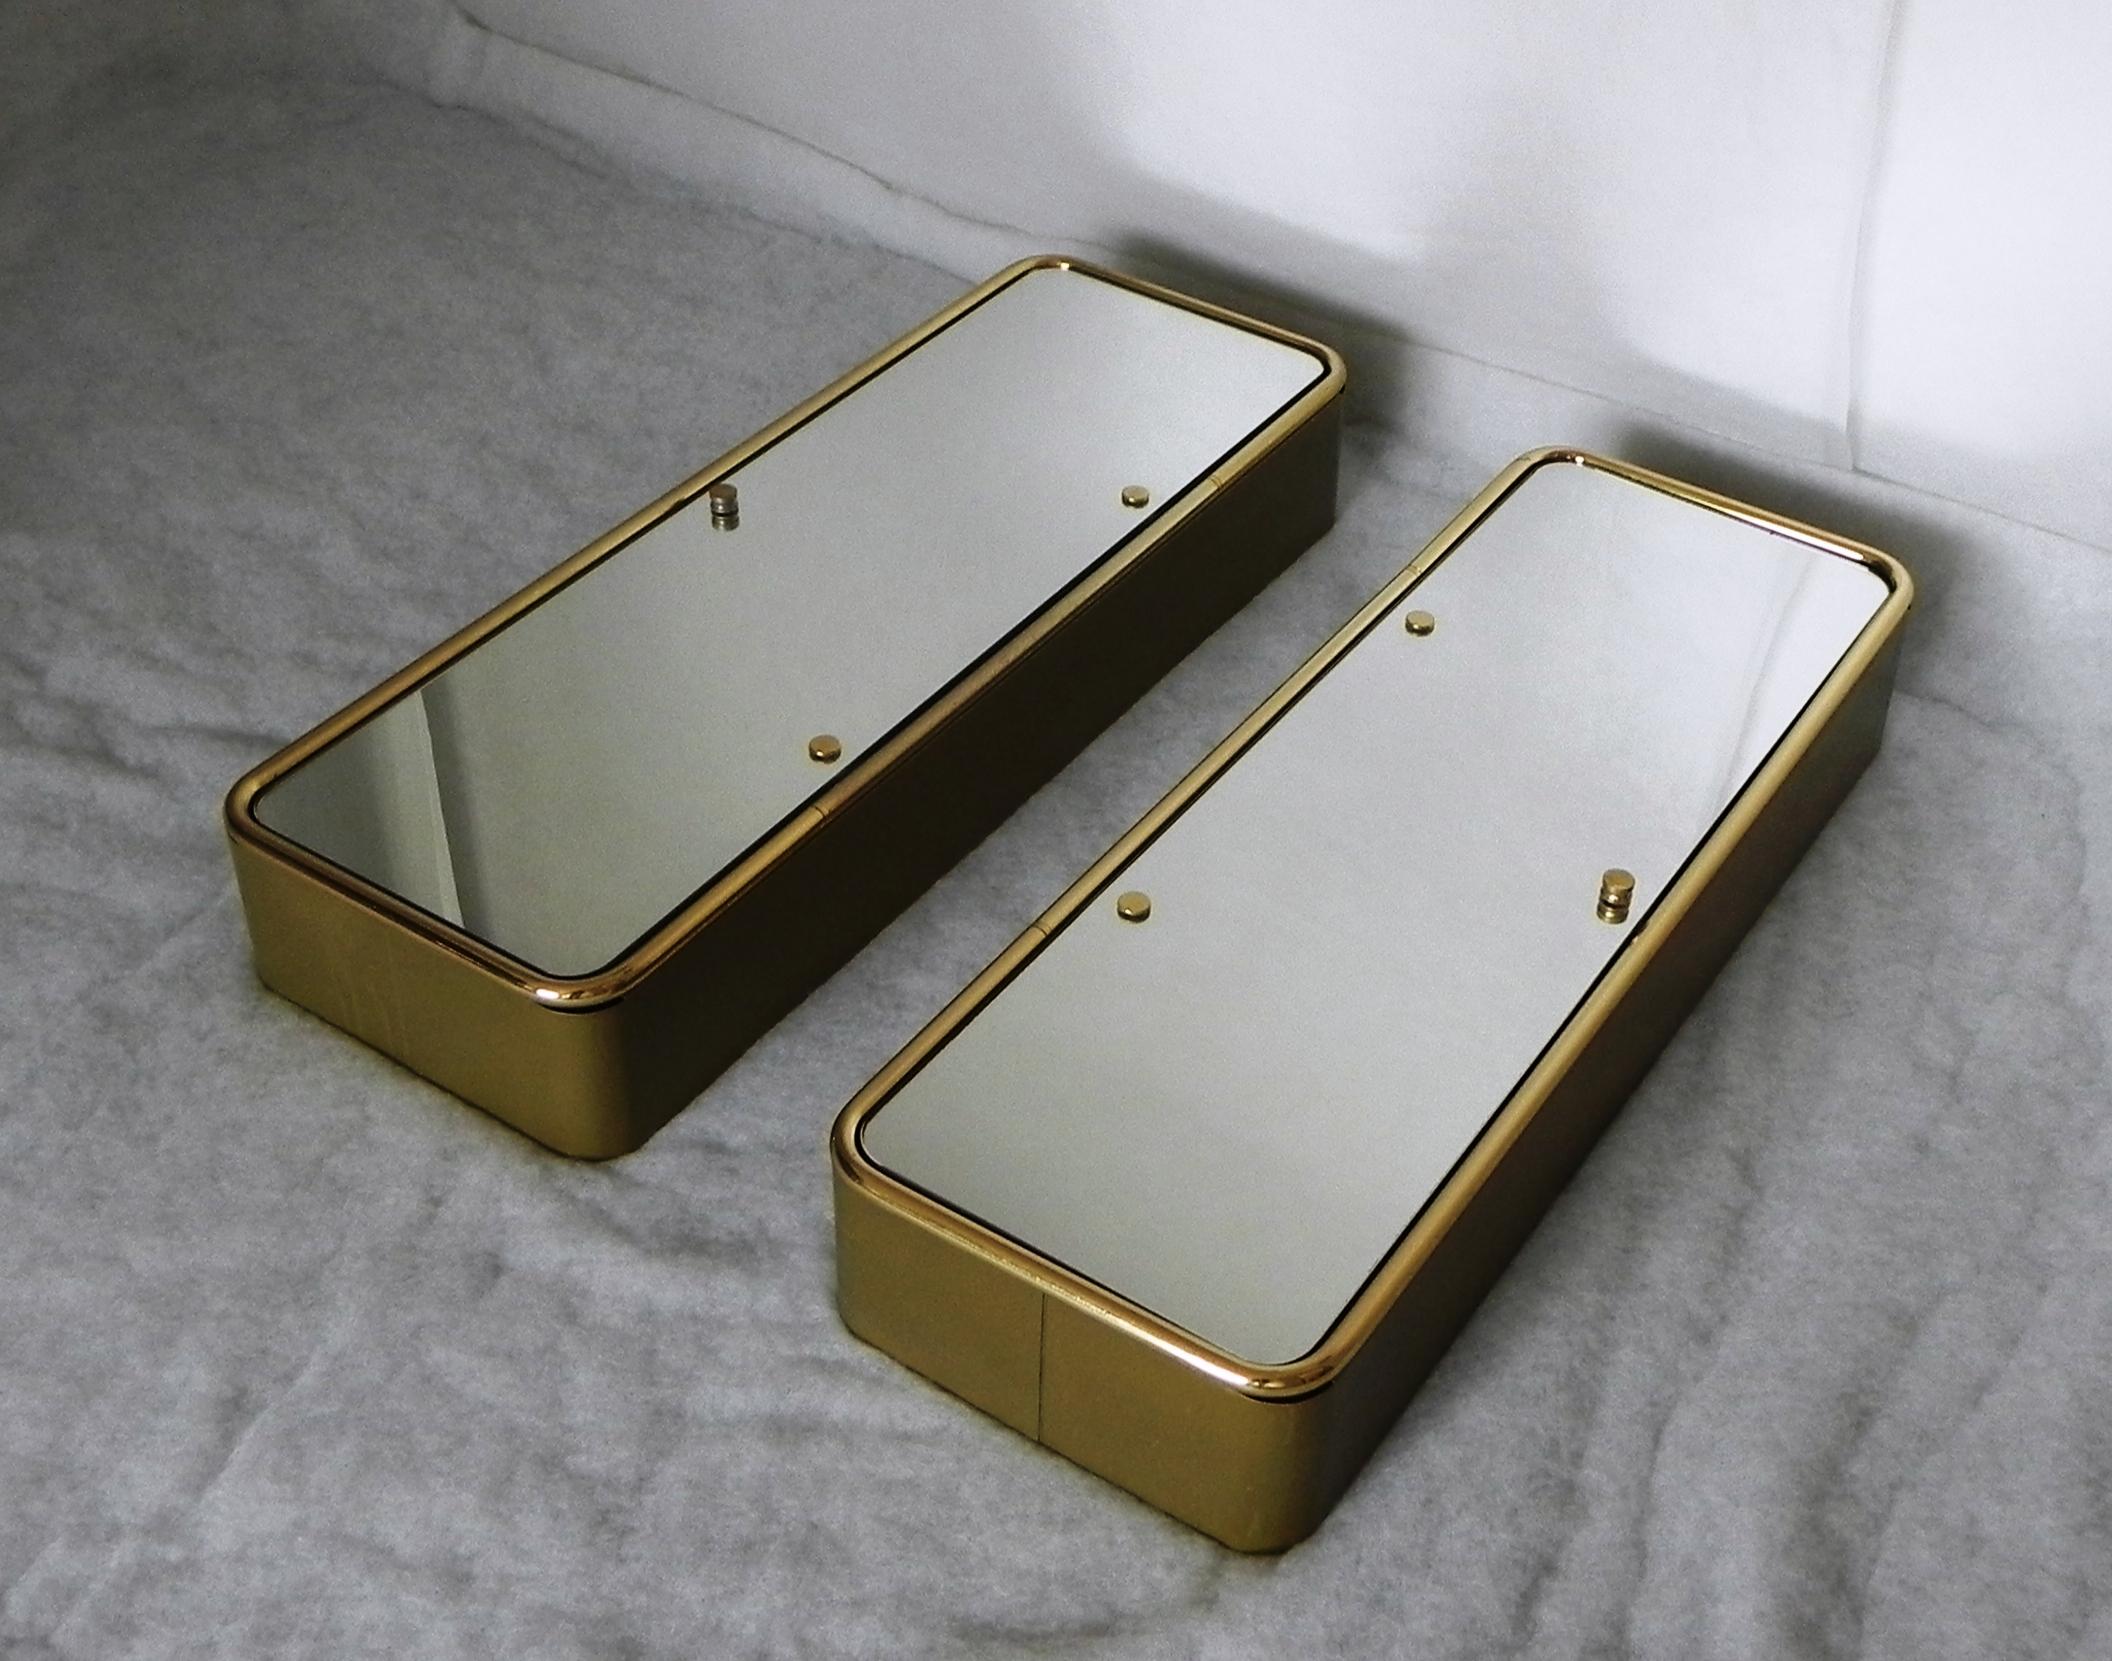 paar wandschränke für badezimmer, mit spiegeltüren. gold lackiertes schweres metallgestell, doppelseitige spiegeltüren mit doppelter stärke, kristall-einlegeböden im inneren. die türen können rechts oder links angeschlagen werden. das produkt ist